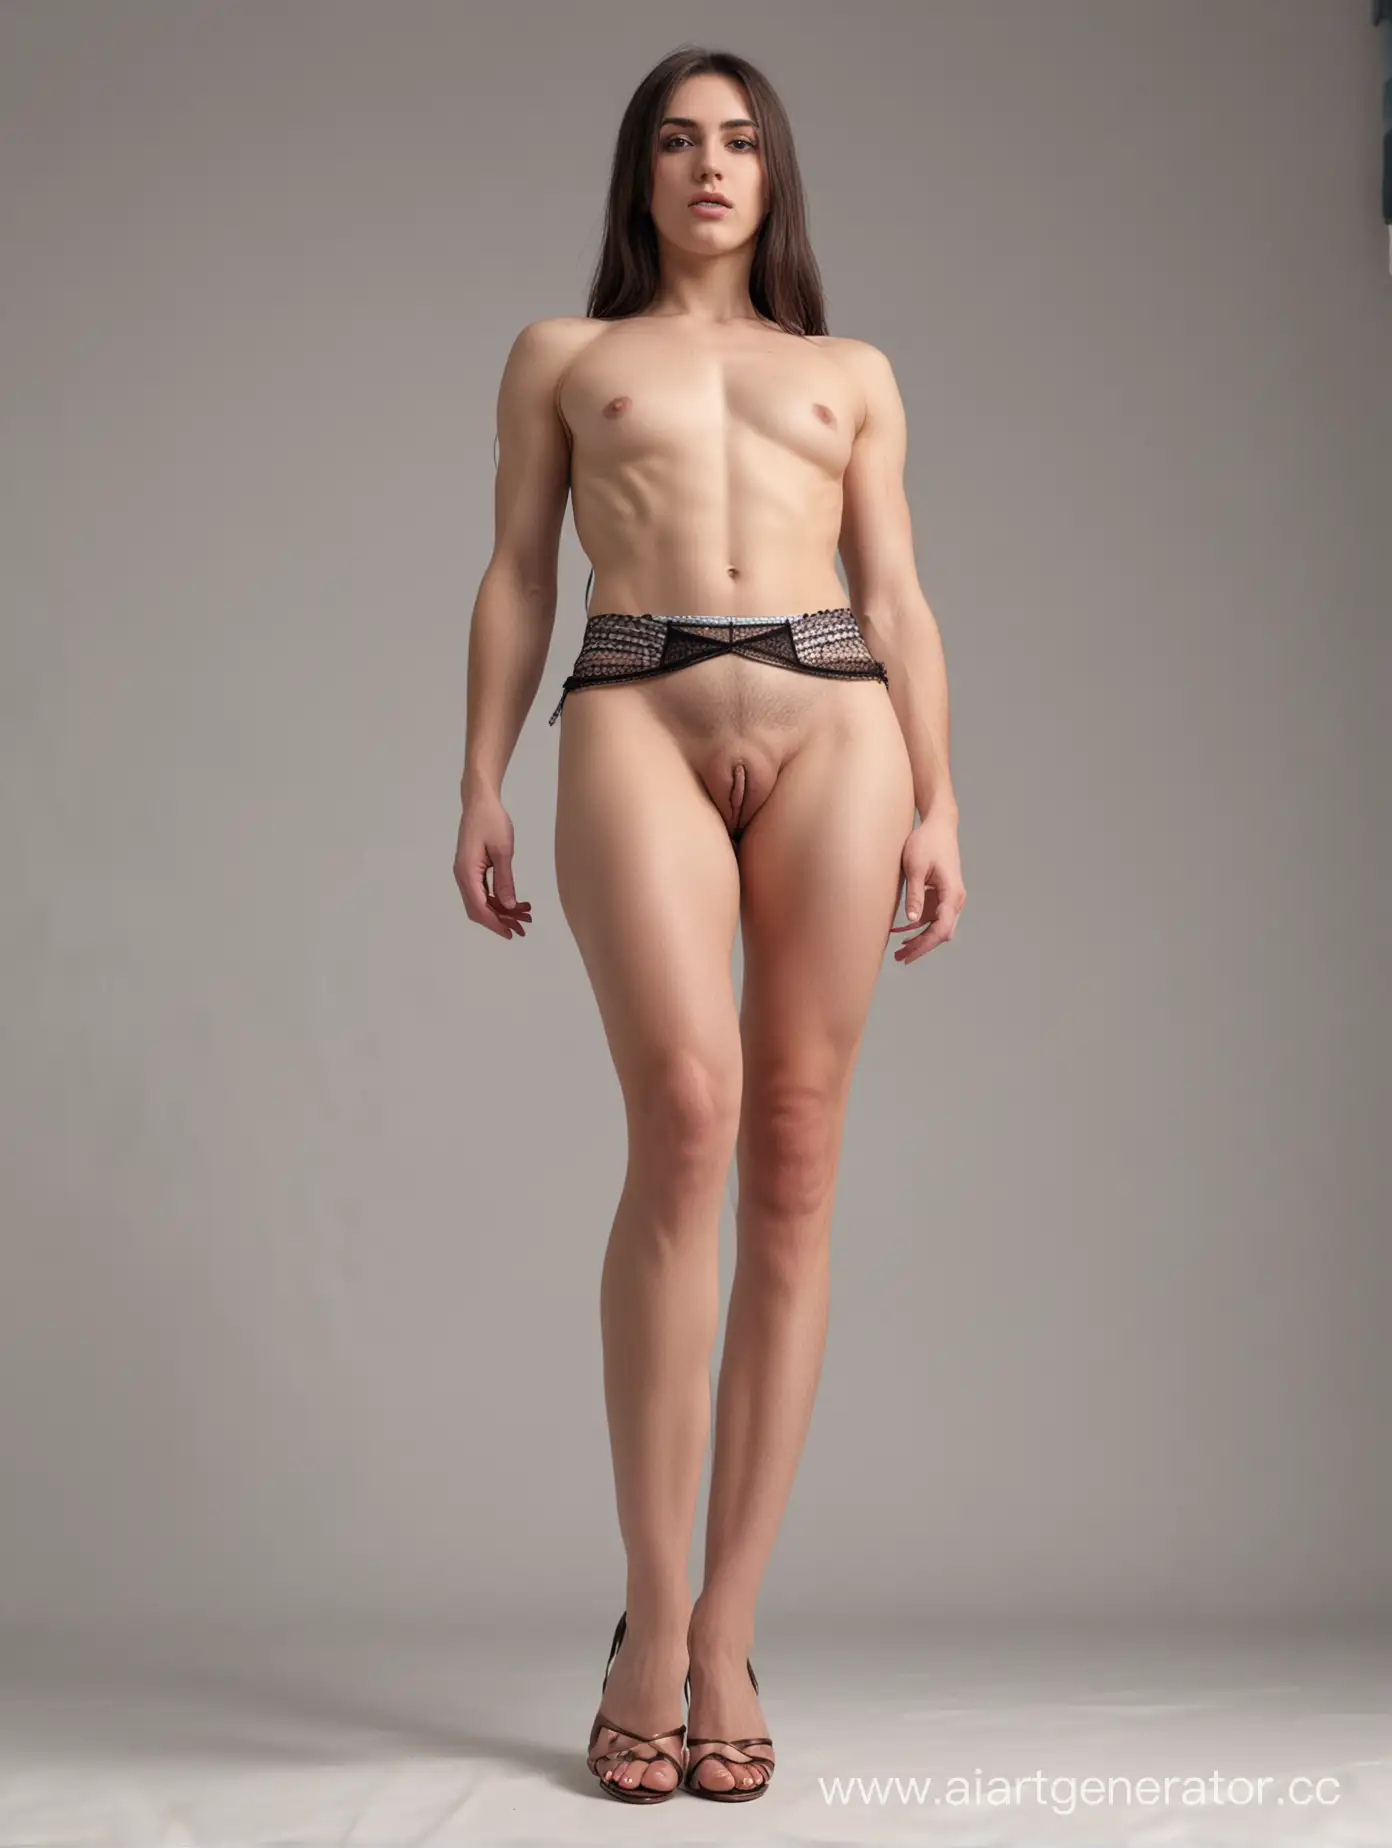 8K, максимальная детализация, ракурс снизу в полный рост: стоя расставив ноги стройный голый трансгендер в короткой юбке из-под которой висит длинный пенис с огромной головкой